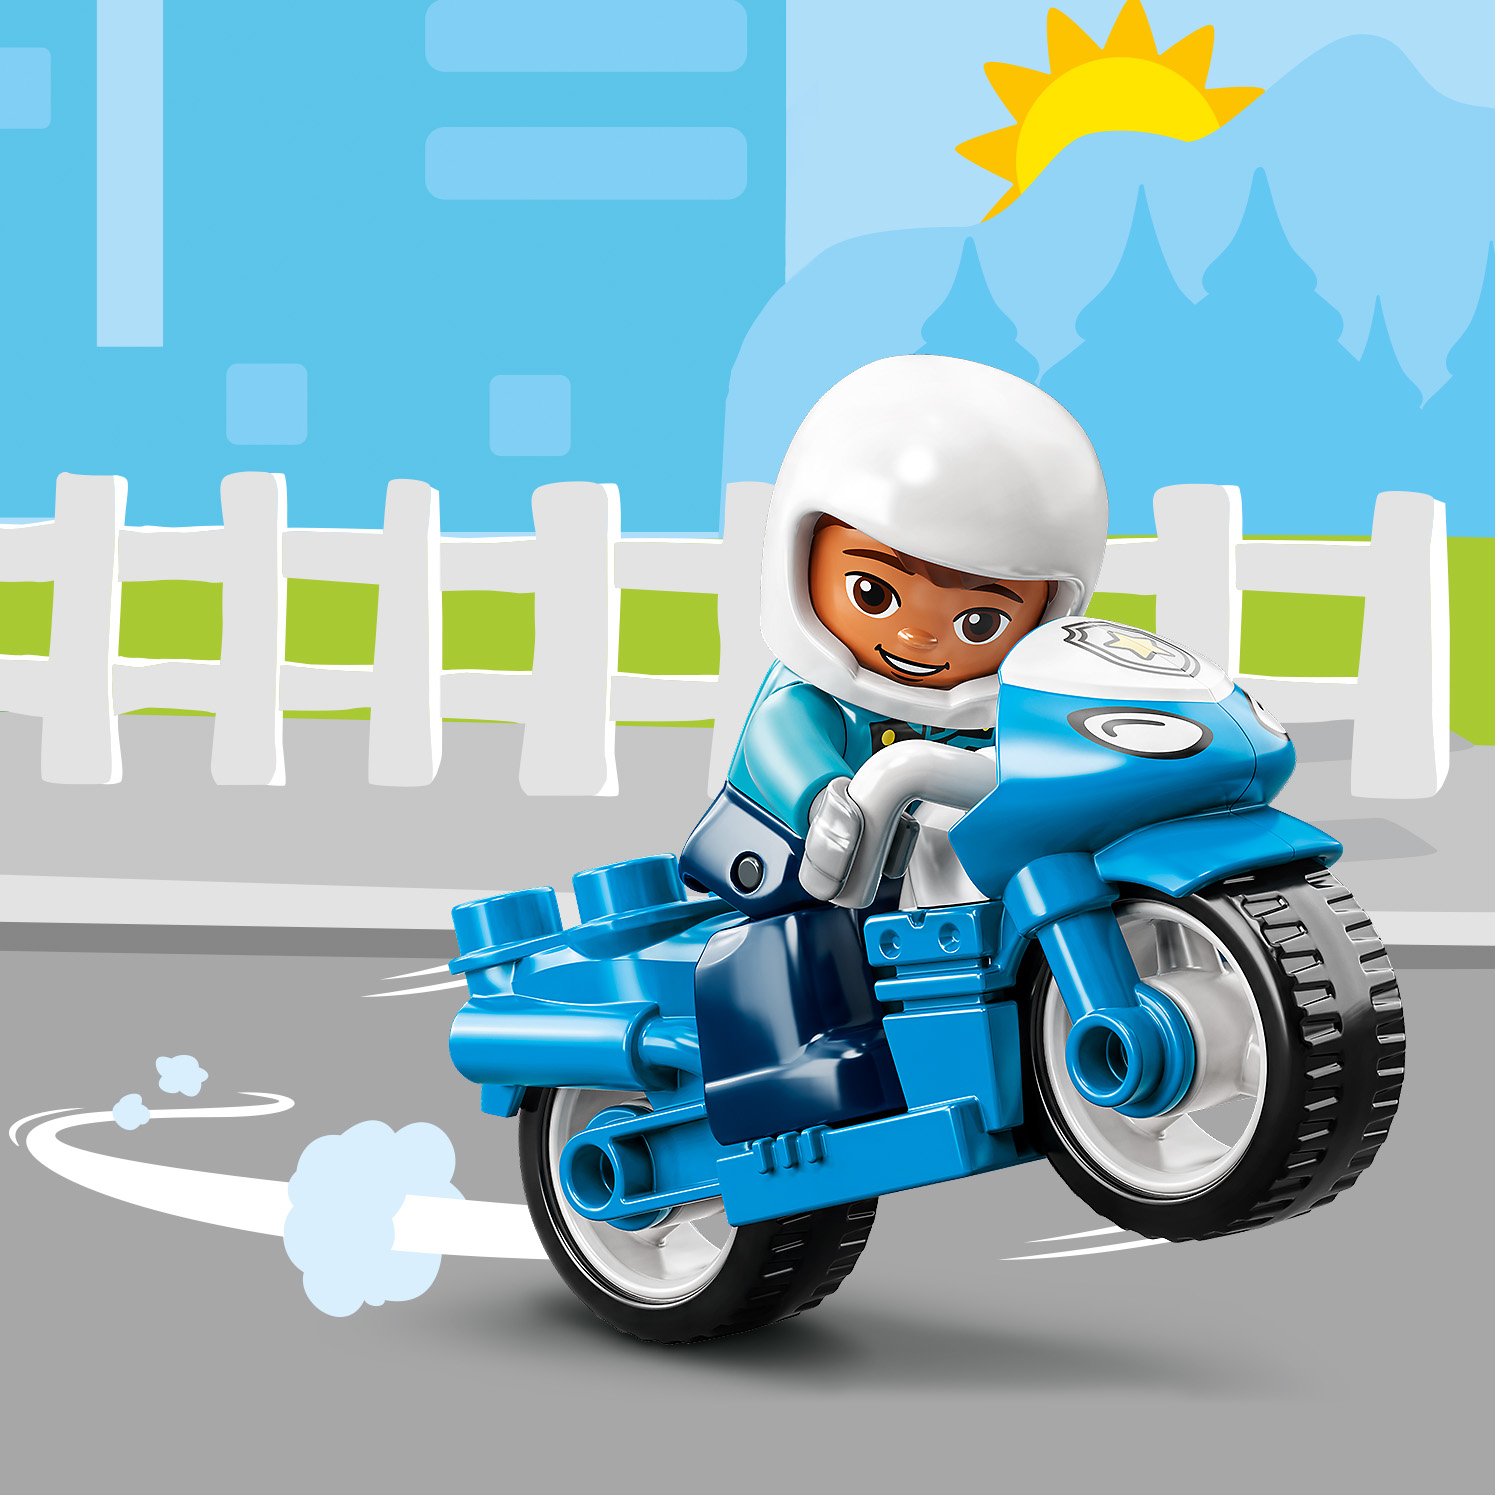 LEGO 10967 DUPLO La Moto De Police, Jouet Pour les Enfants de 2 Ans et